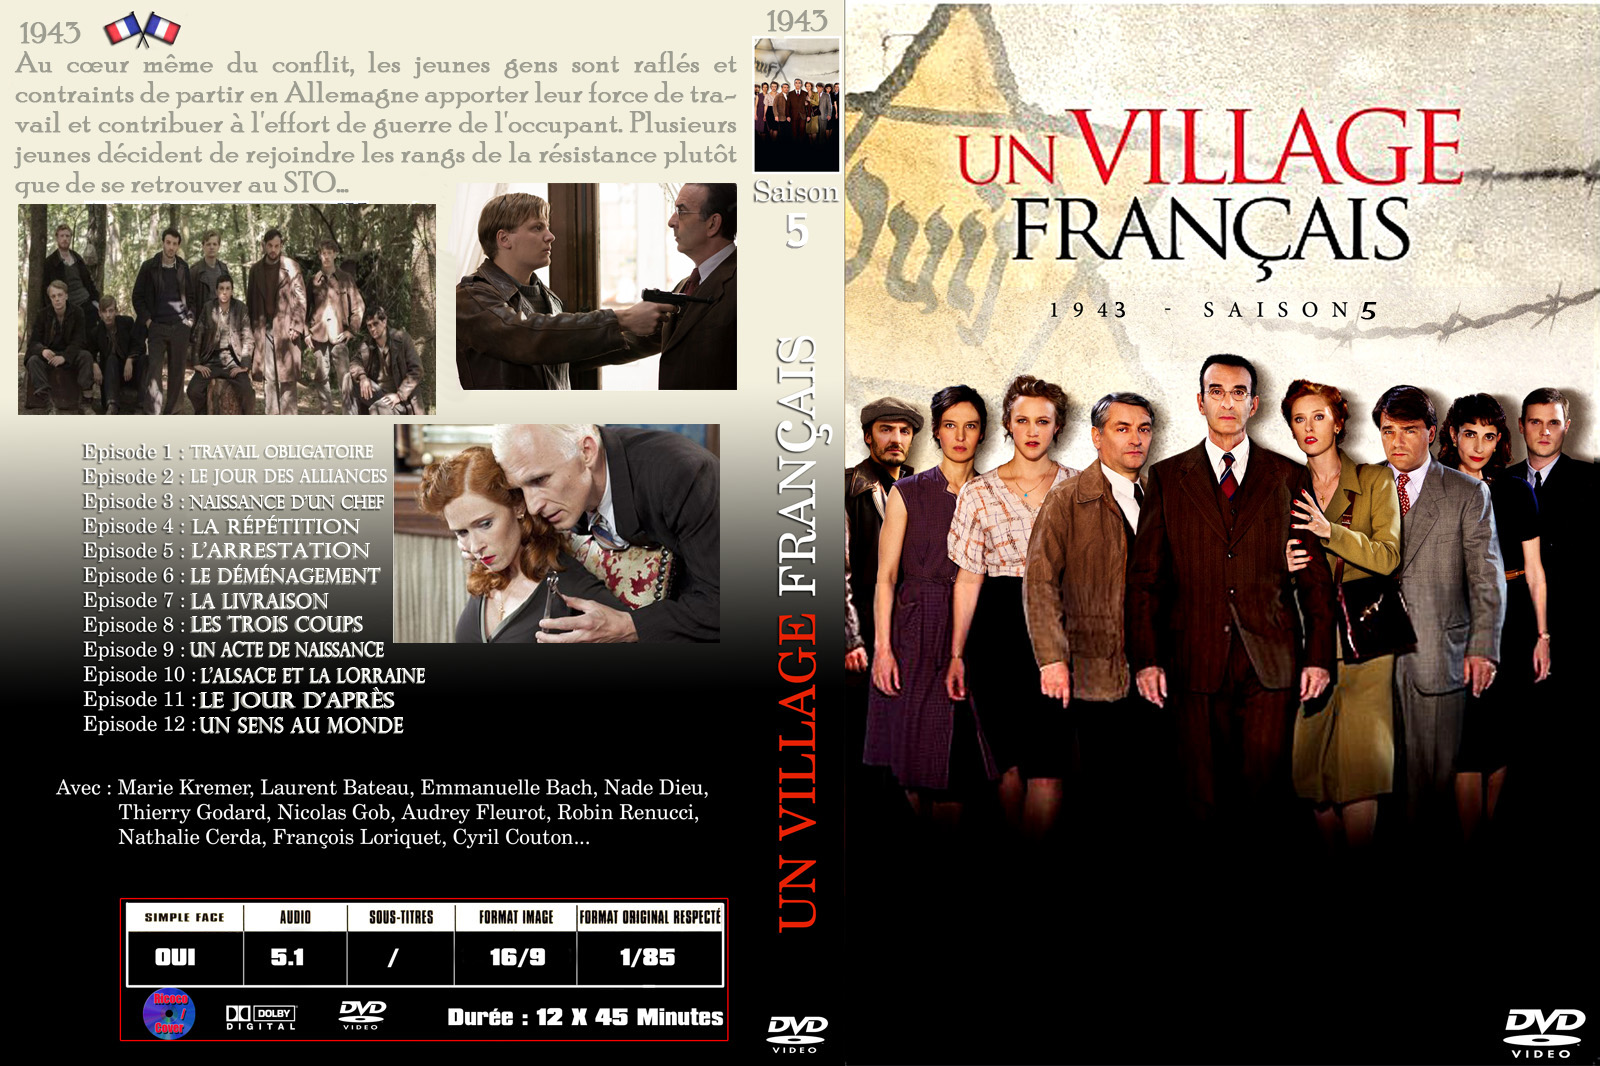 Jaquette DVD Un village francais Saison 5 custom